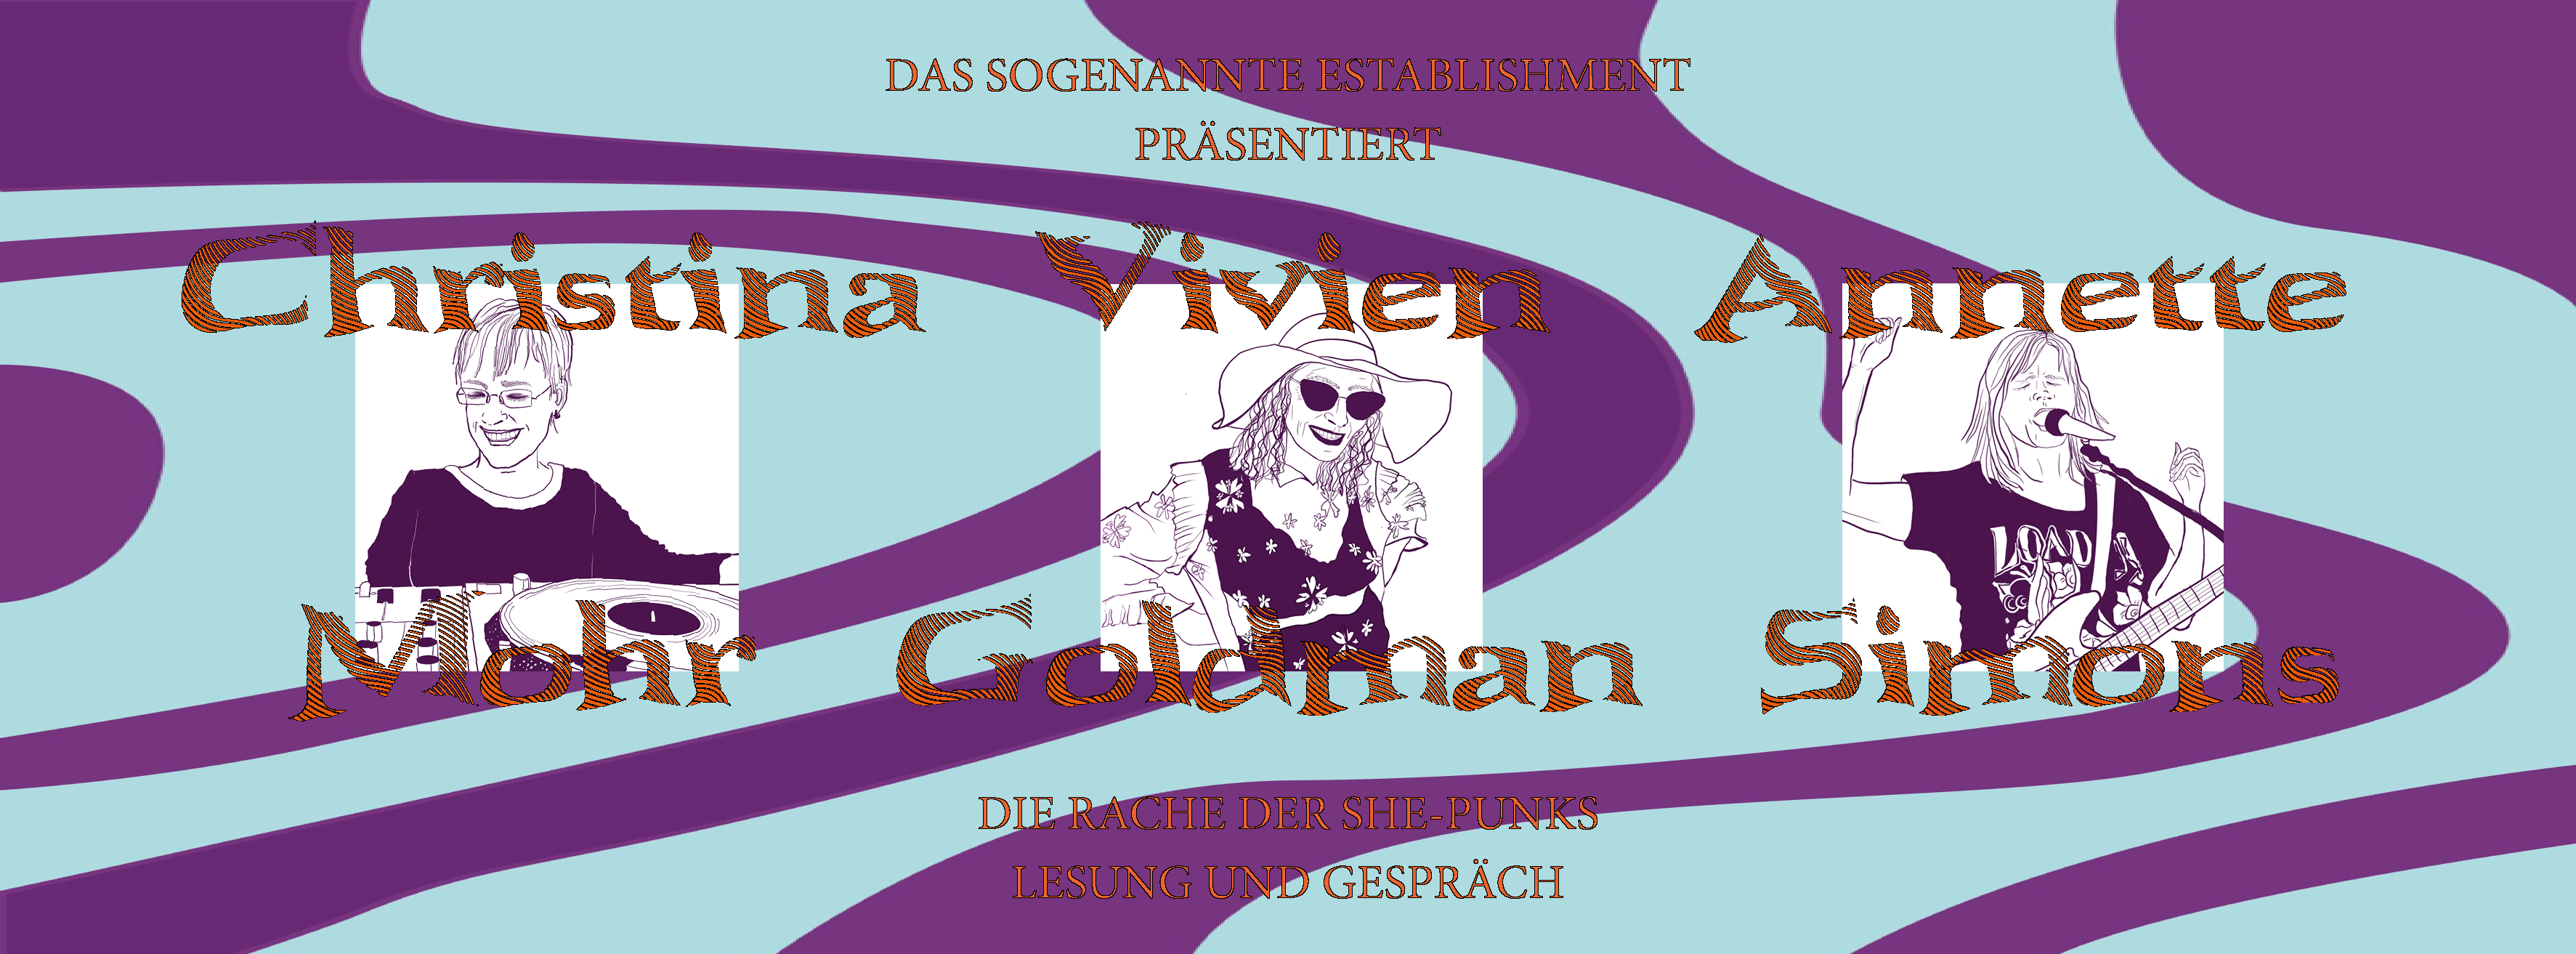 Lesung und Gespräch: Vivien Goldman »Die Rache der She-Punks« mit Vivien Goldman, Christina Mohr und Annette Simons